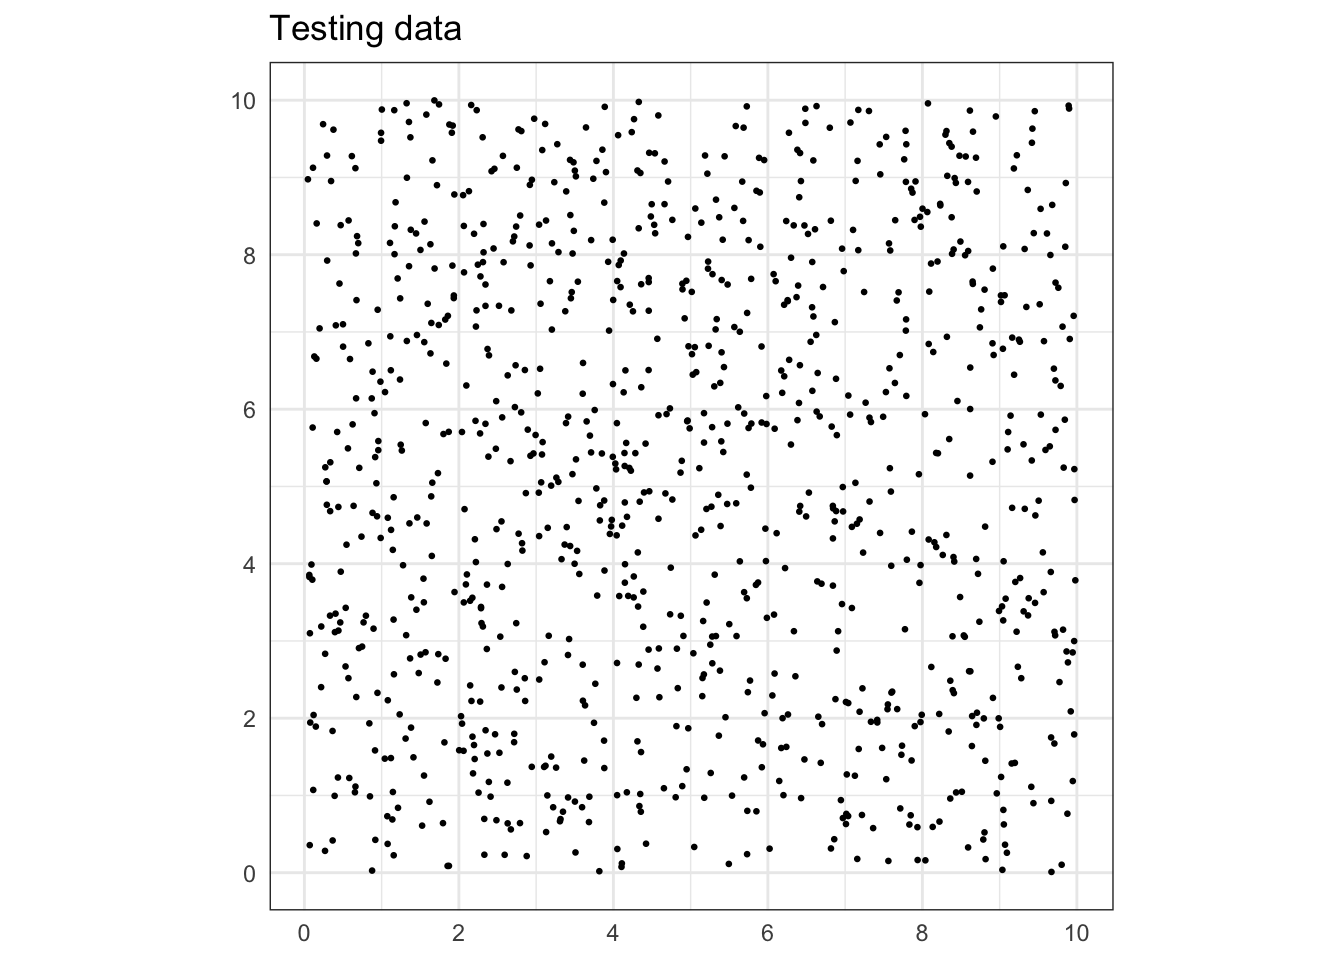 Testing data (n = 1000).